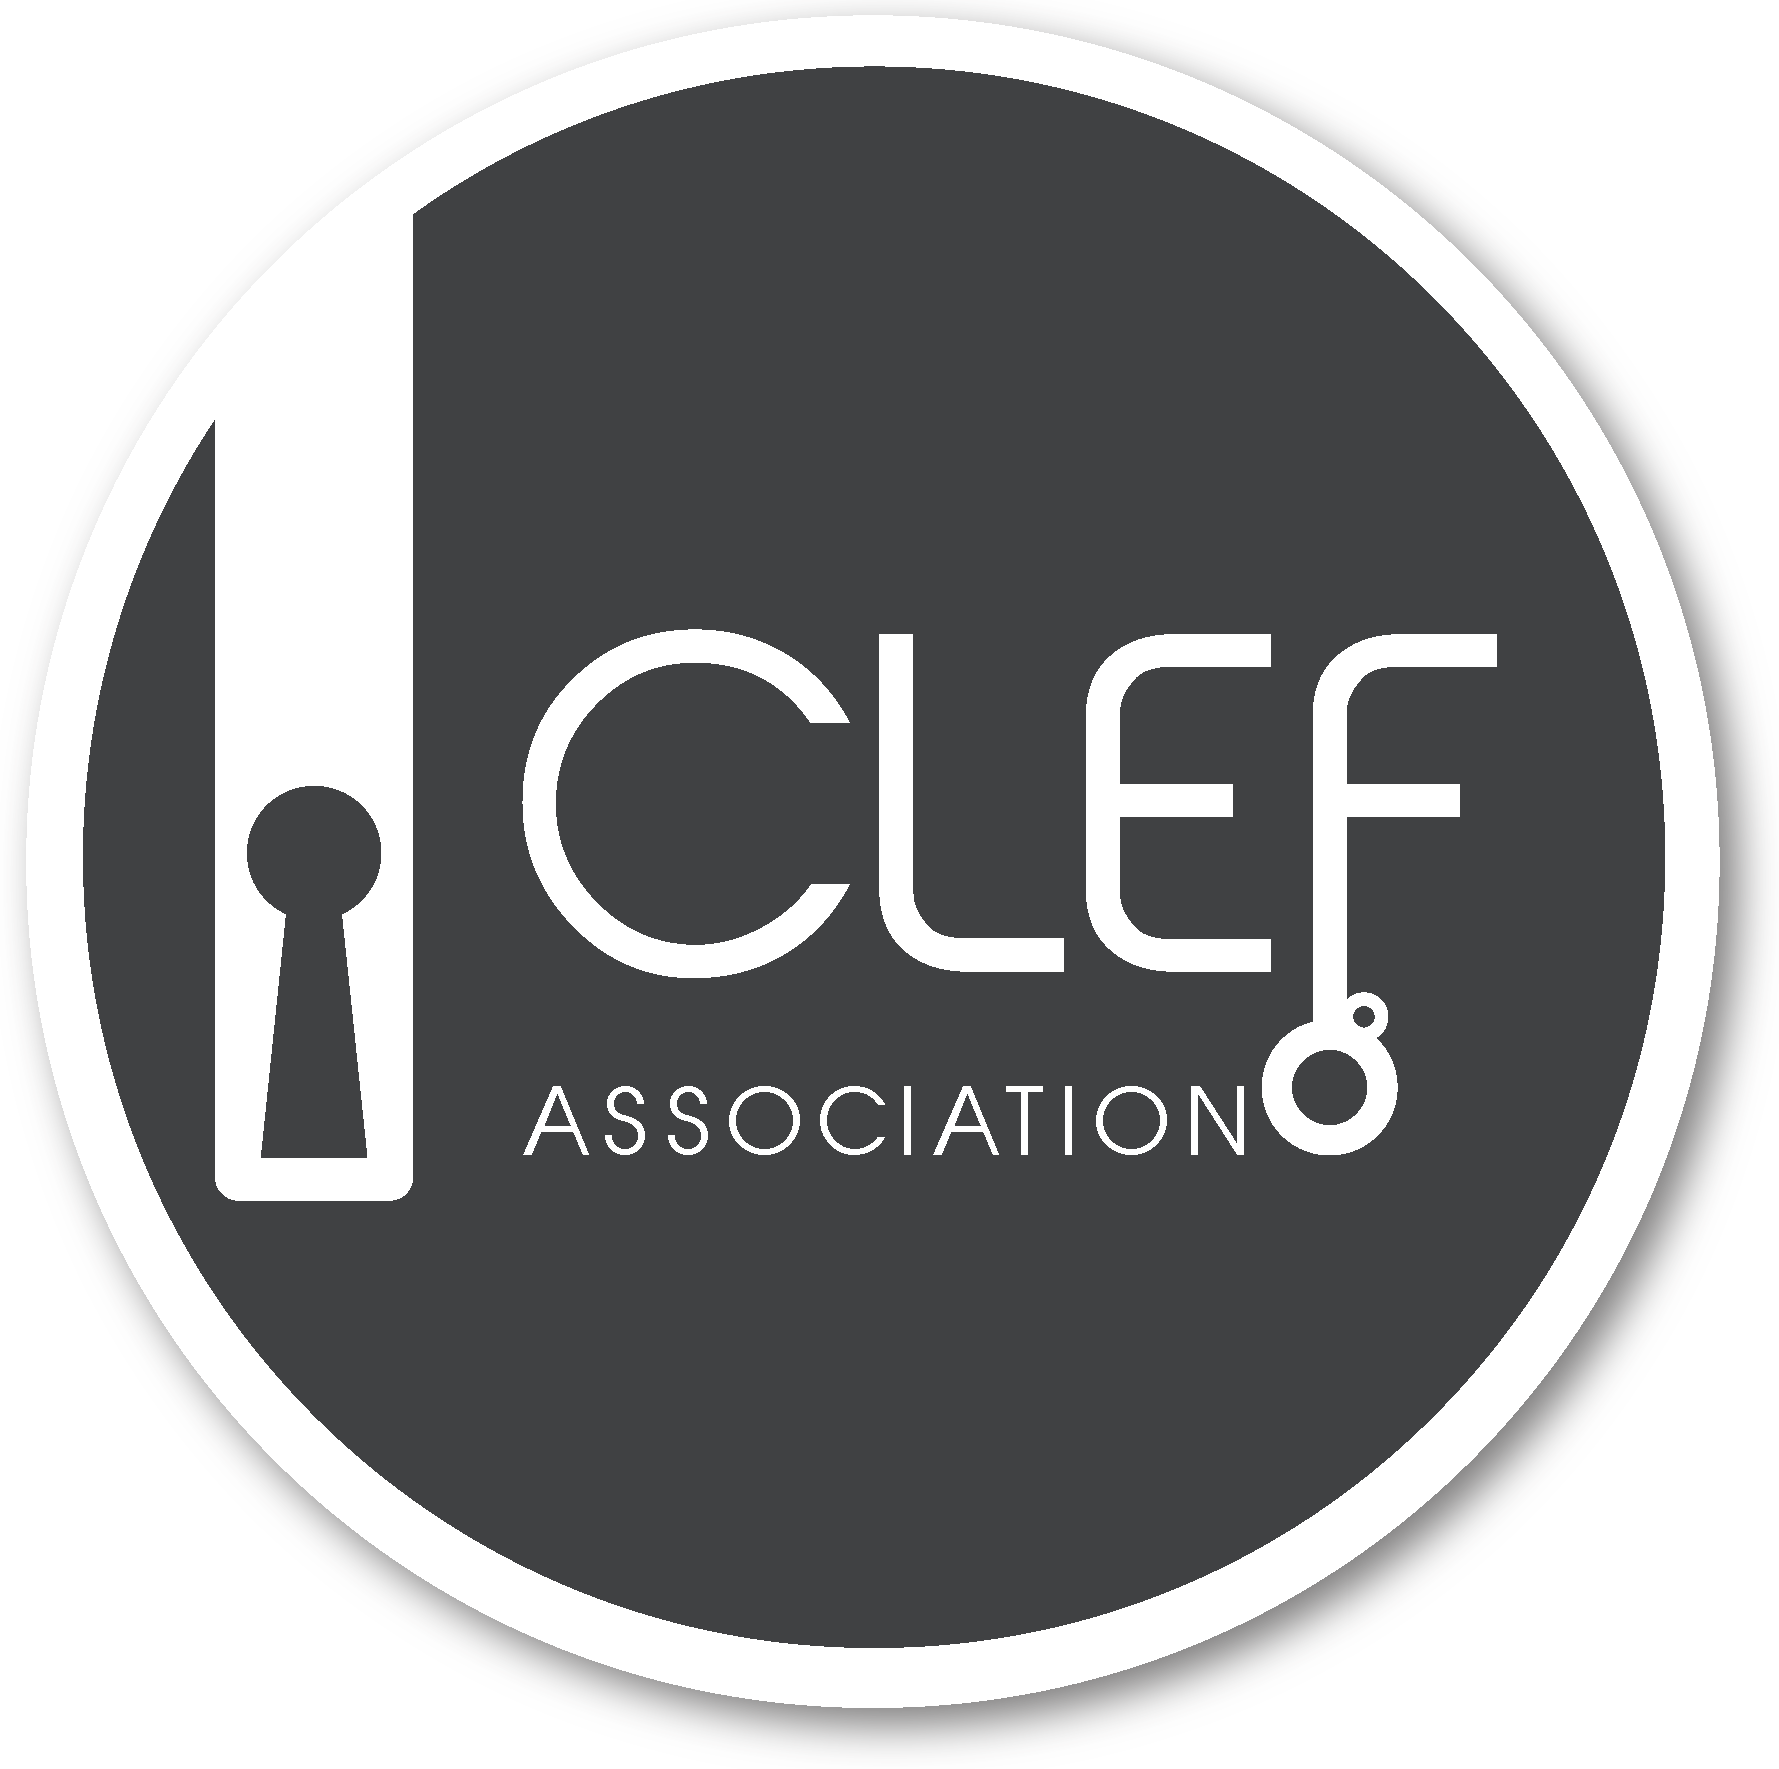 CLEF Initiative